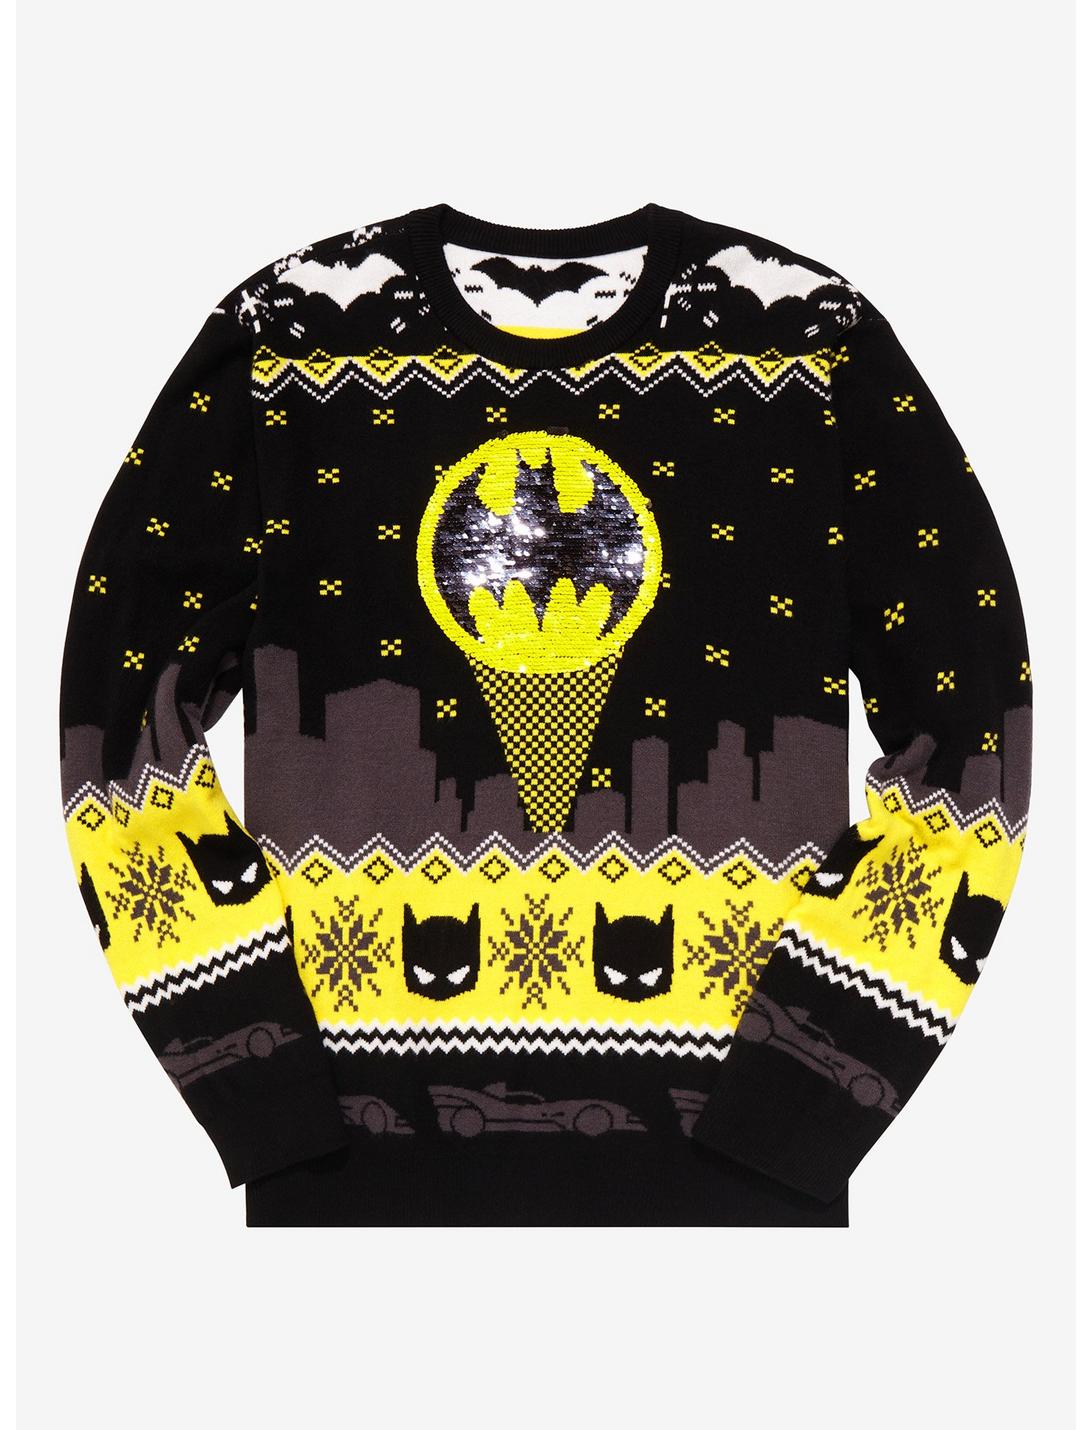 DC Comics Batman Bat Signal Sequin Holiday Sweater - BoxLunch Exclusive, BLACK, hi-res